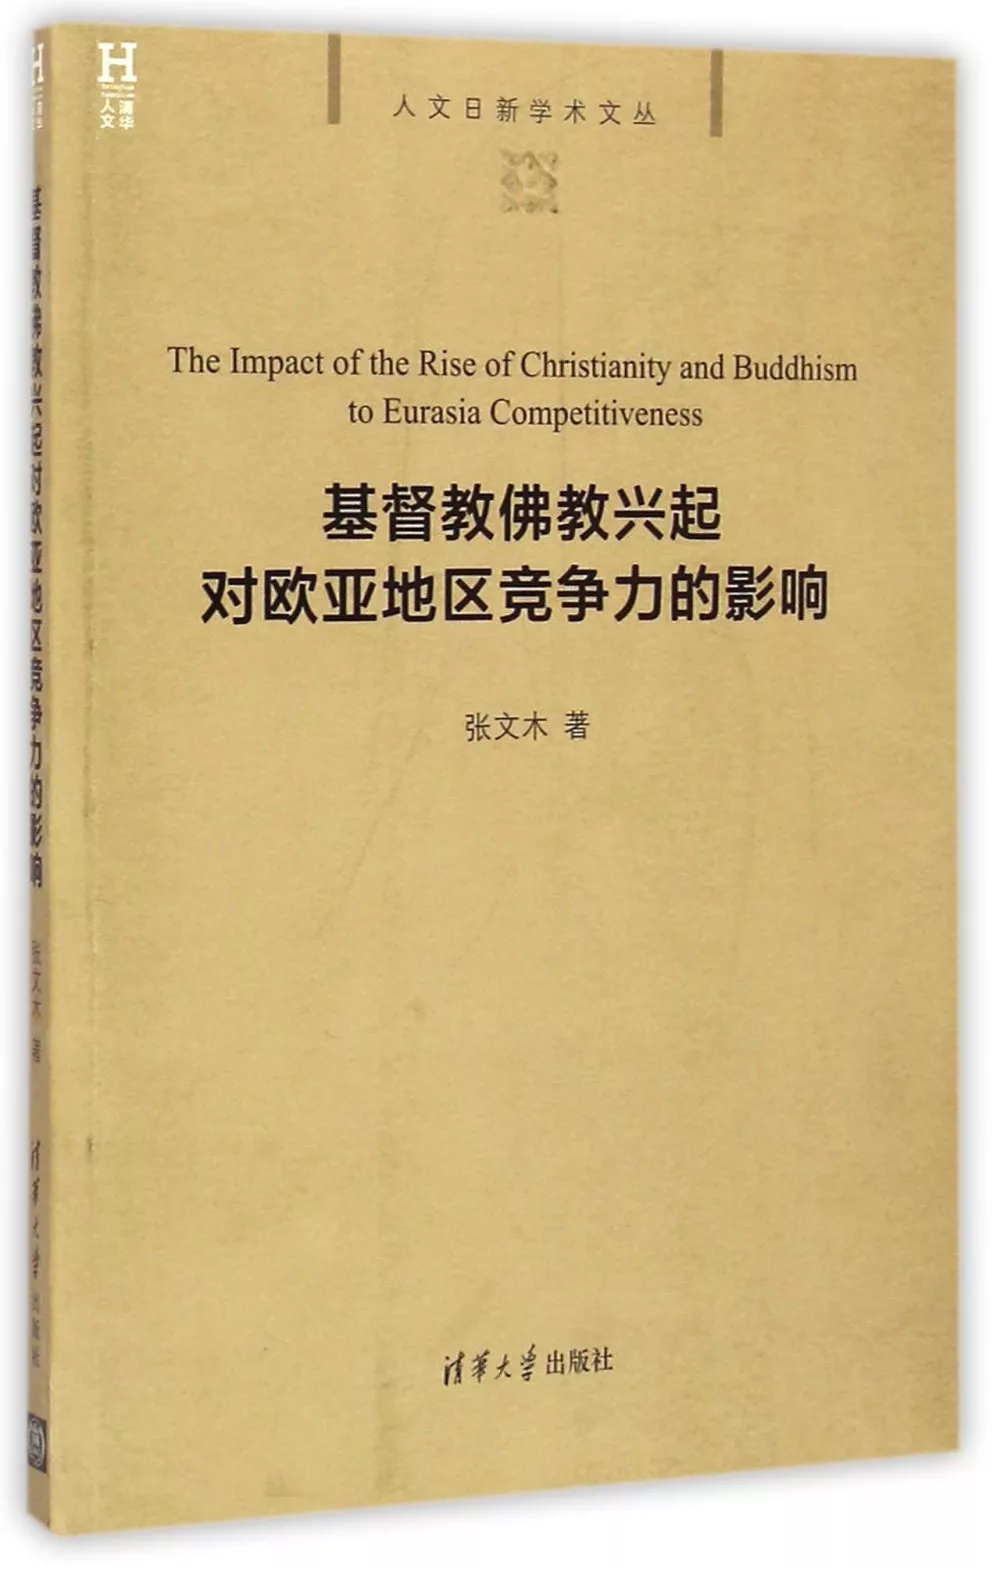 基督教佛教興起對歐亞地區競爭力的影響